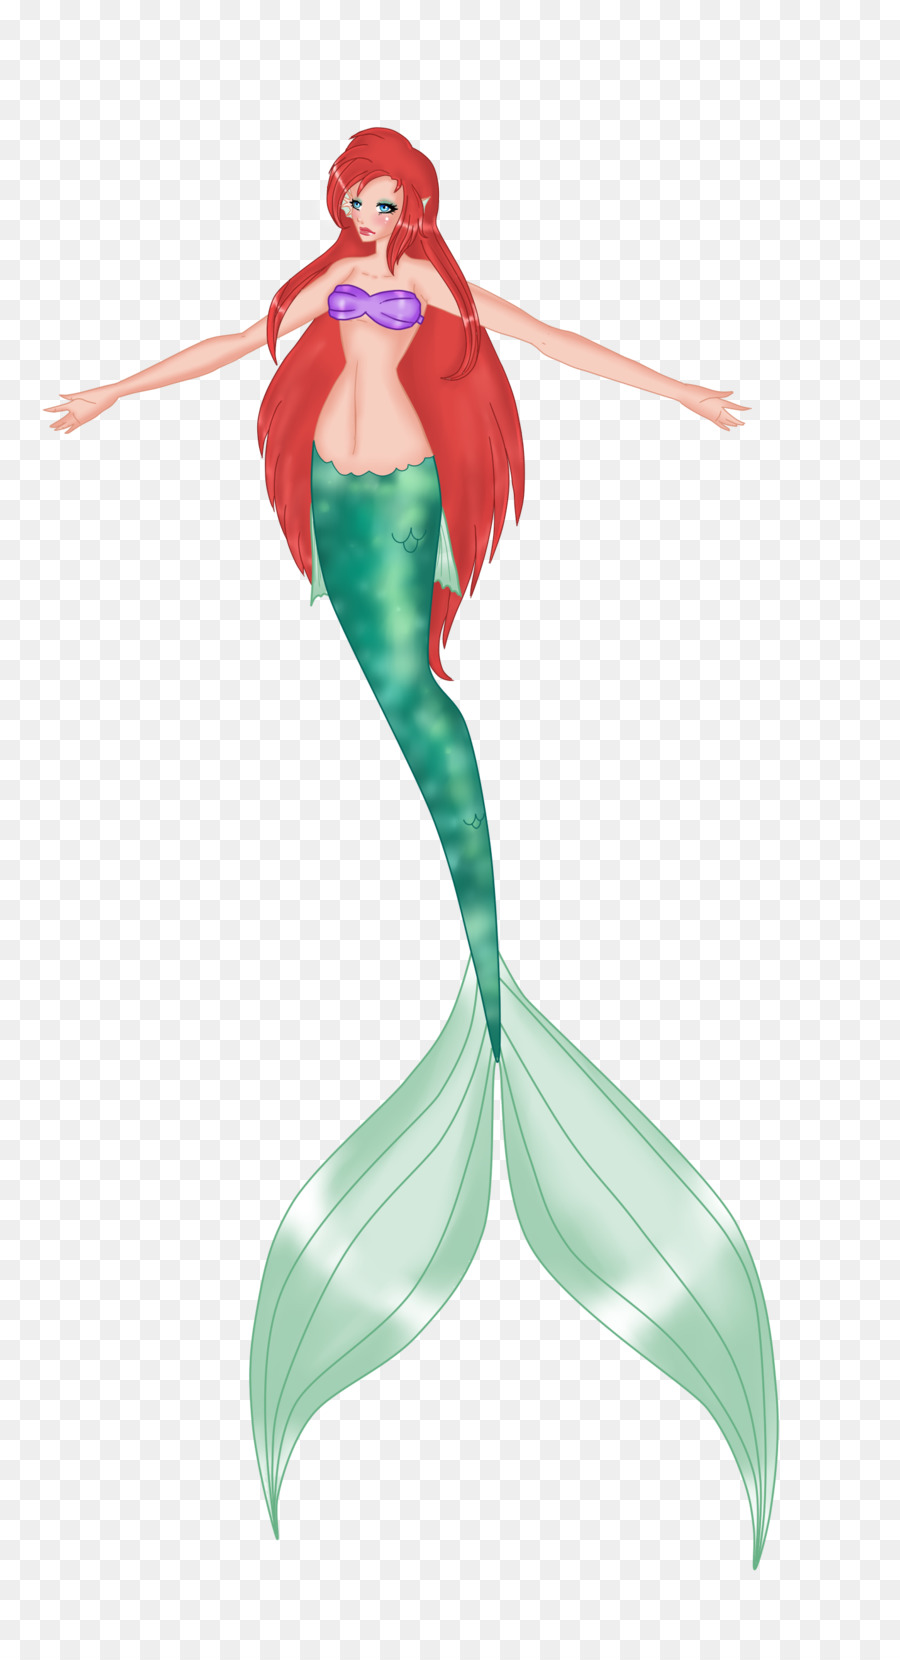 Mermaid Costume design Figurine - Mermaid png download - 900*1652 - Free Transparent Mermaid png Download.